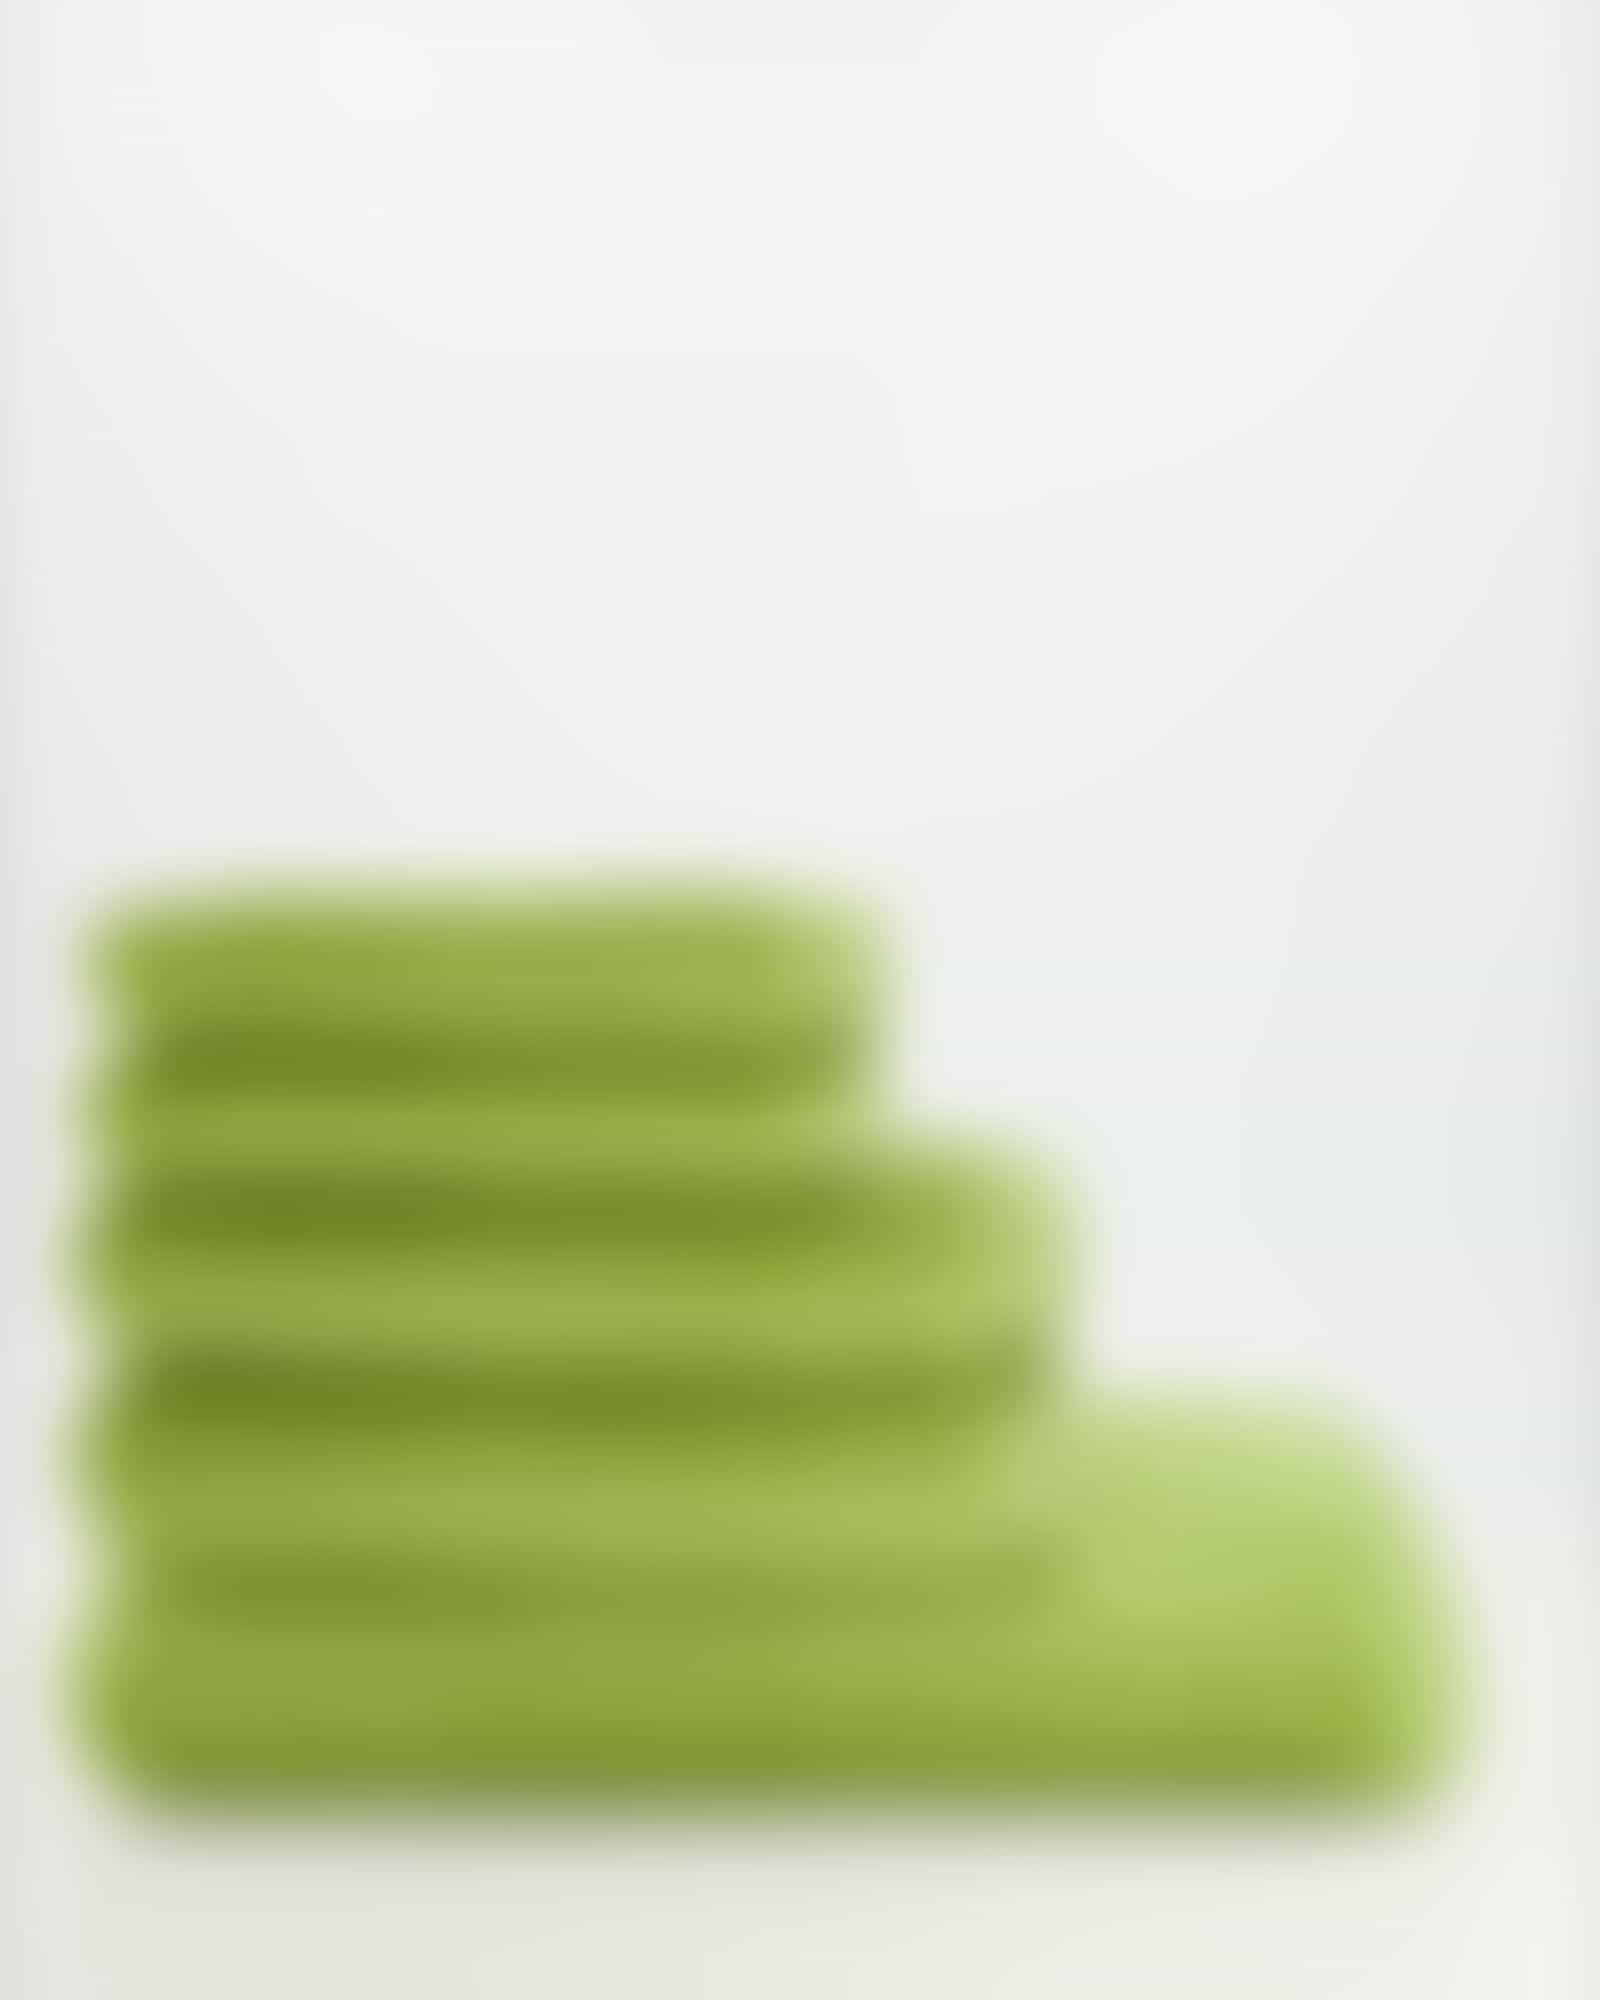 Vossen Handtücher Vegan Life - Farbe: avocado - 5705 - Duschtuch 67x140 cm